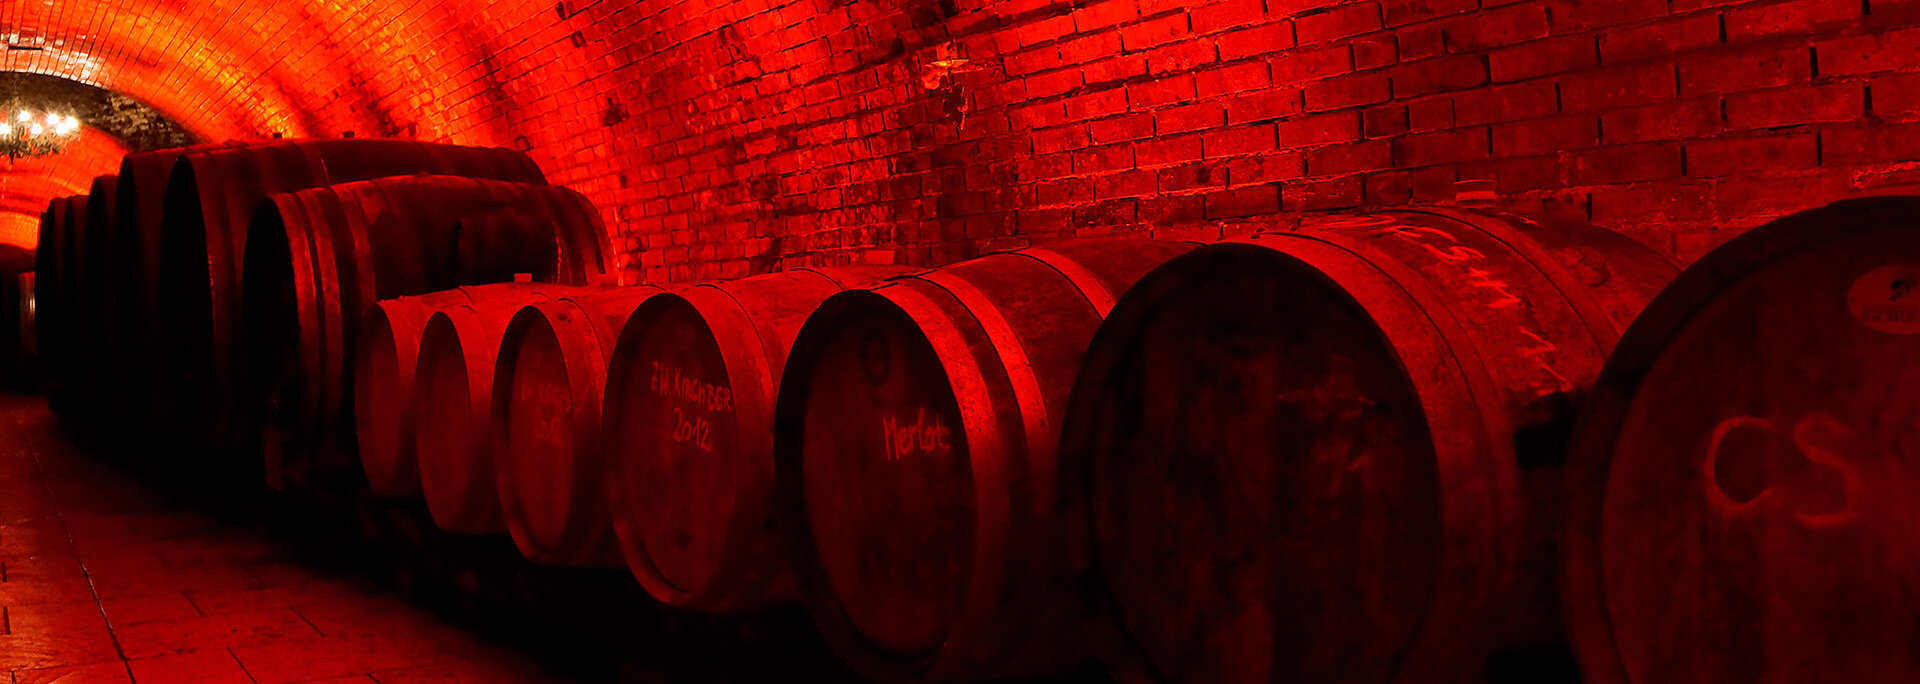 Im Weinkeller stehen große Holzfässer und werden rot beläuchtet.